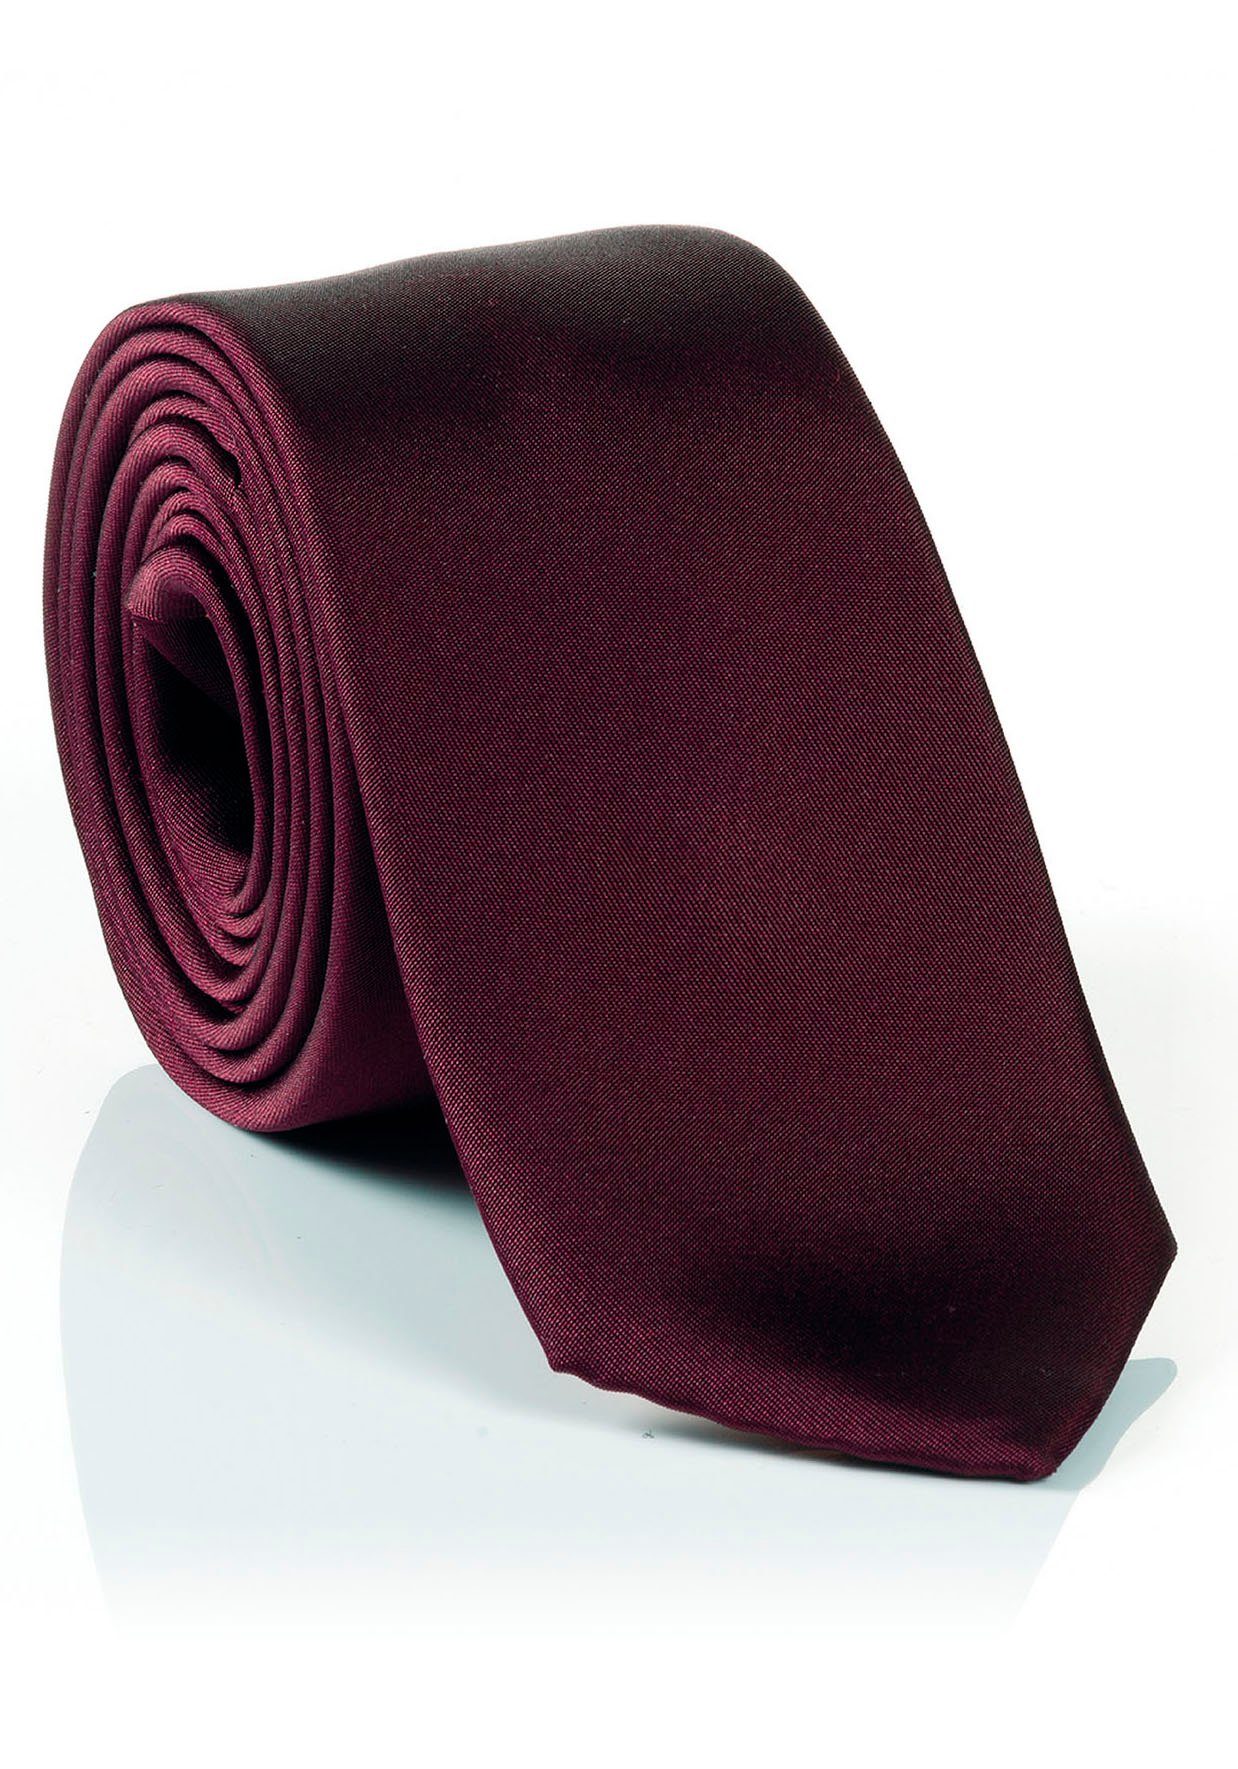 MONTI Krawatte aus reiner Seide, Uni-Pastellfarben bordeaux | Breite Krawatten